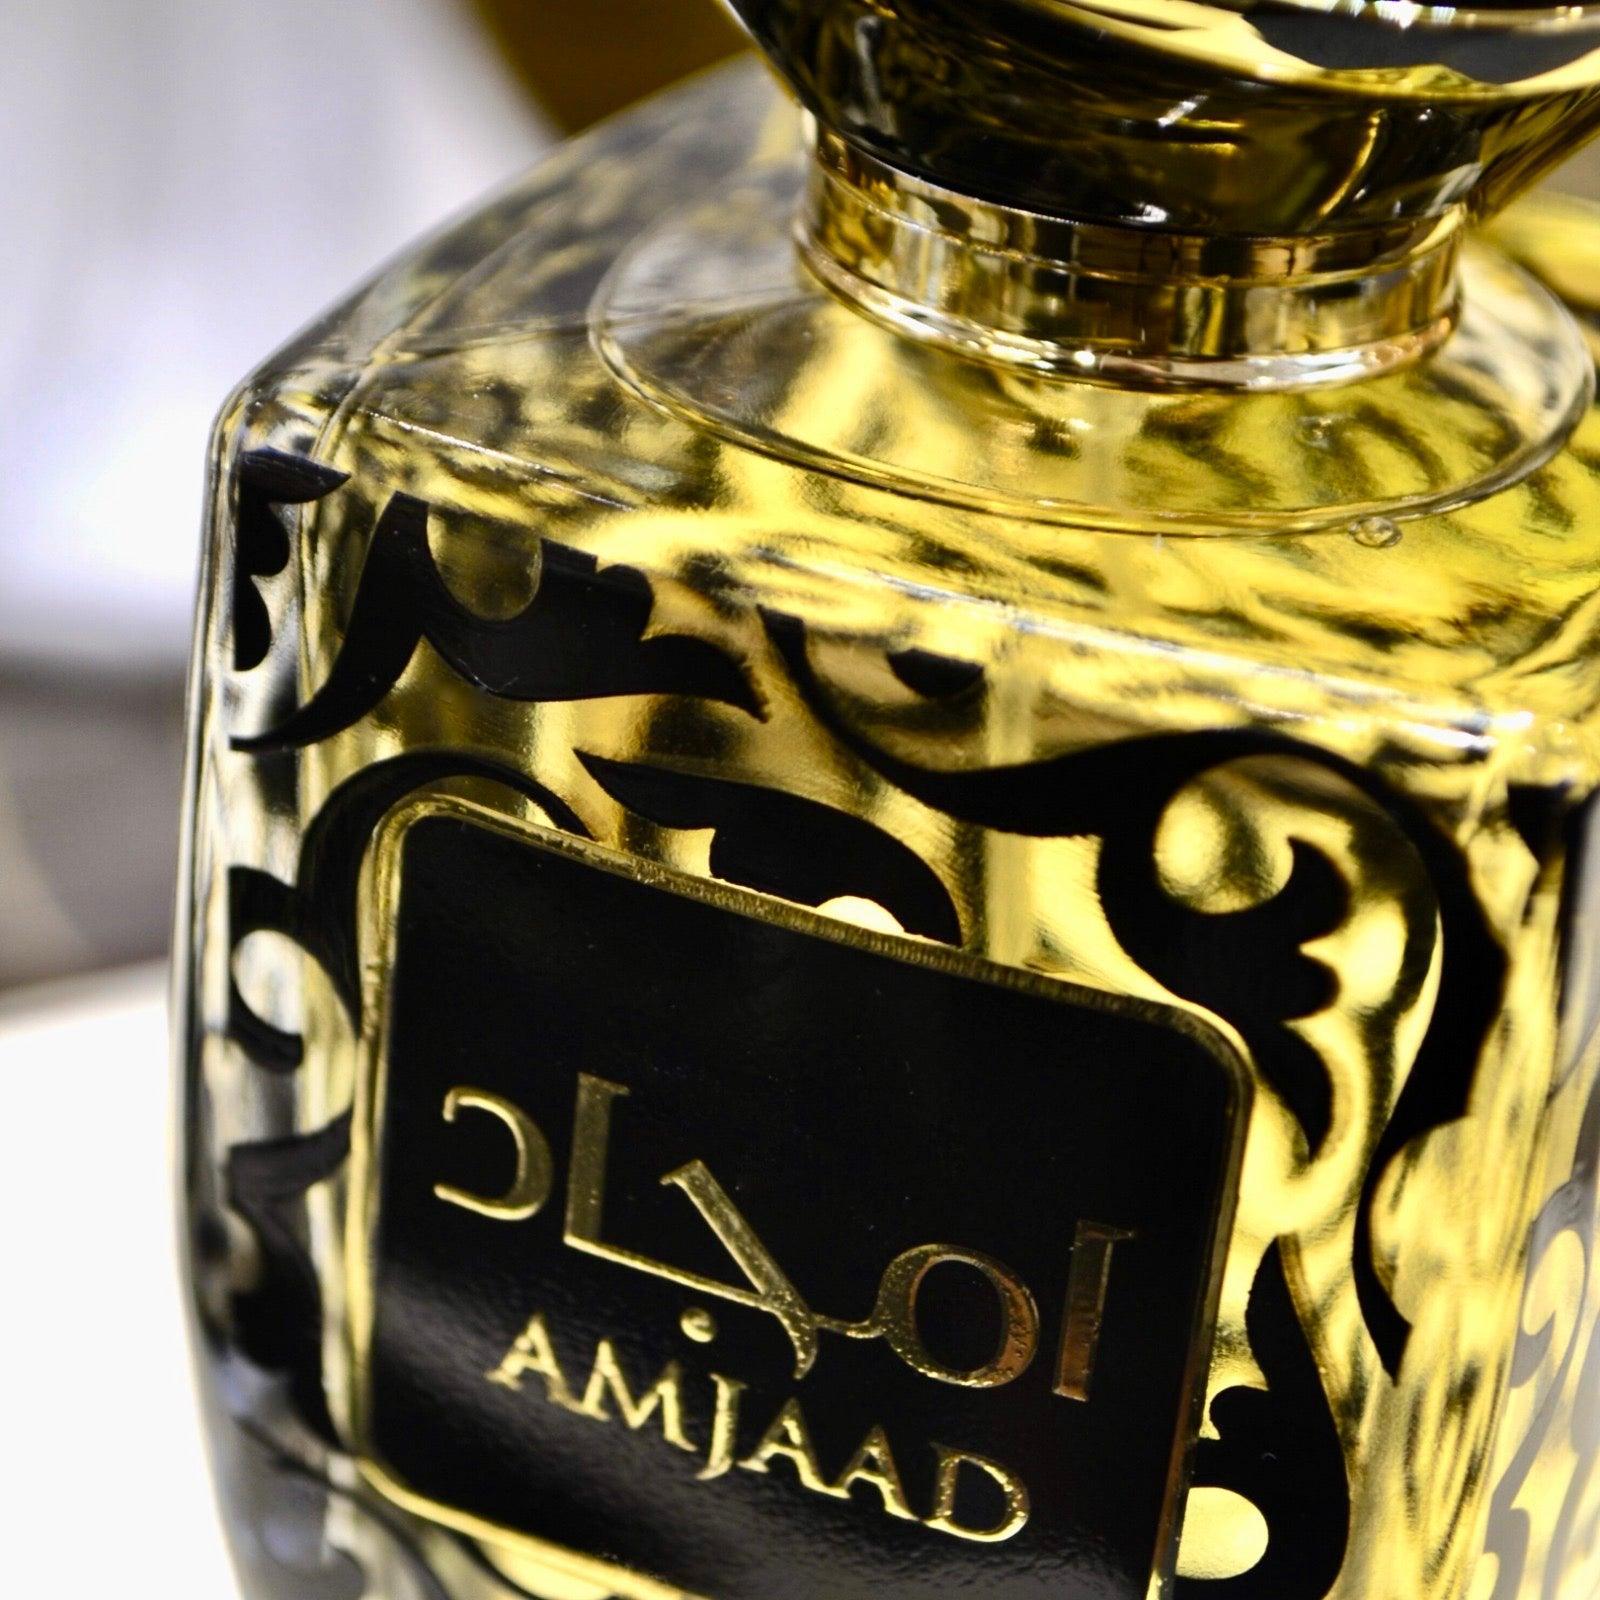 Amjaad | أمجاد Unisex Arabian Perfume 100ml⁩ - HSA Perfumes